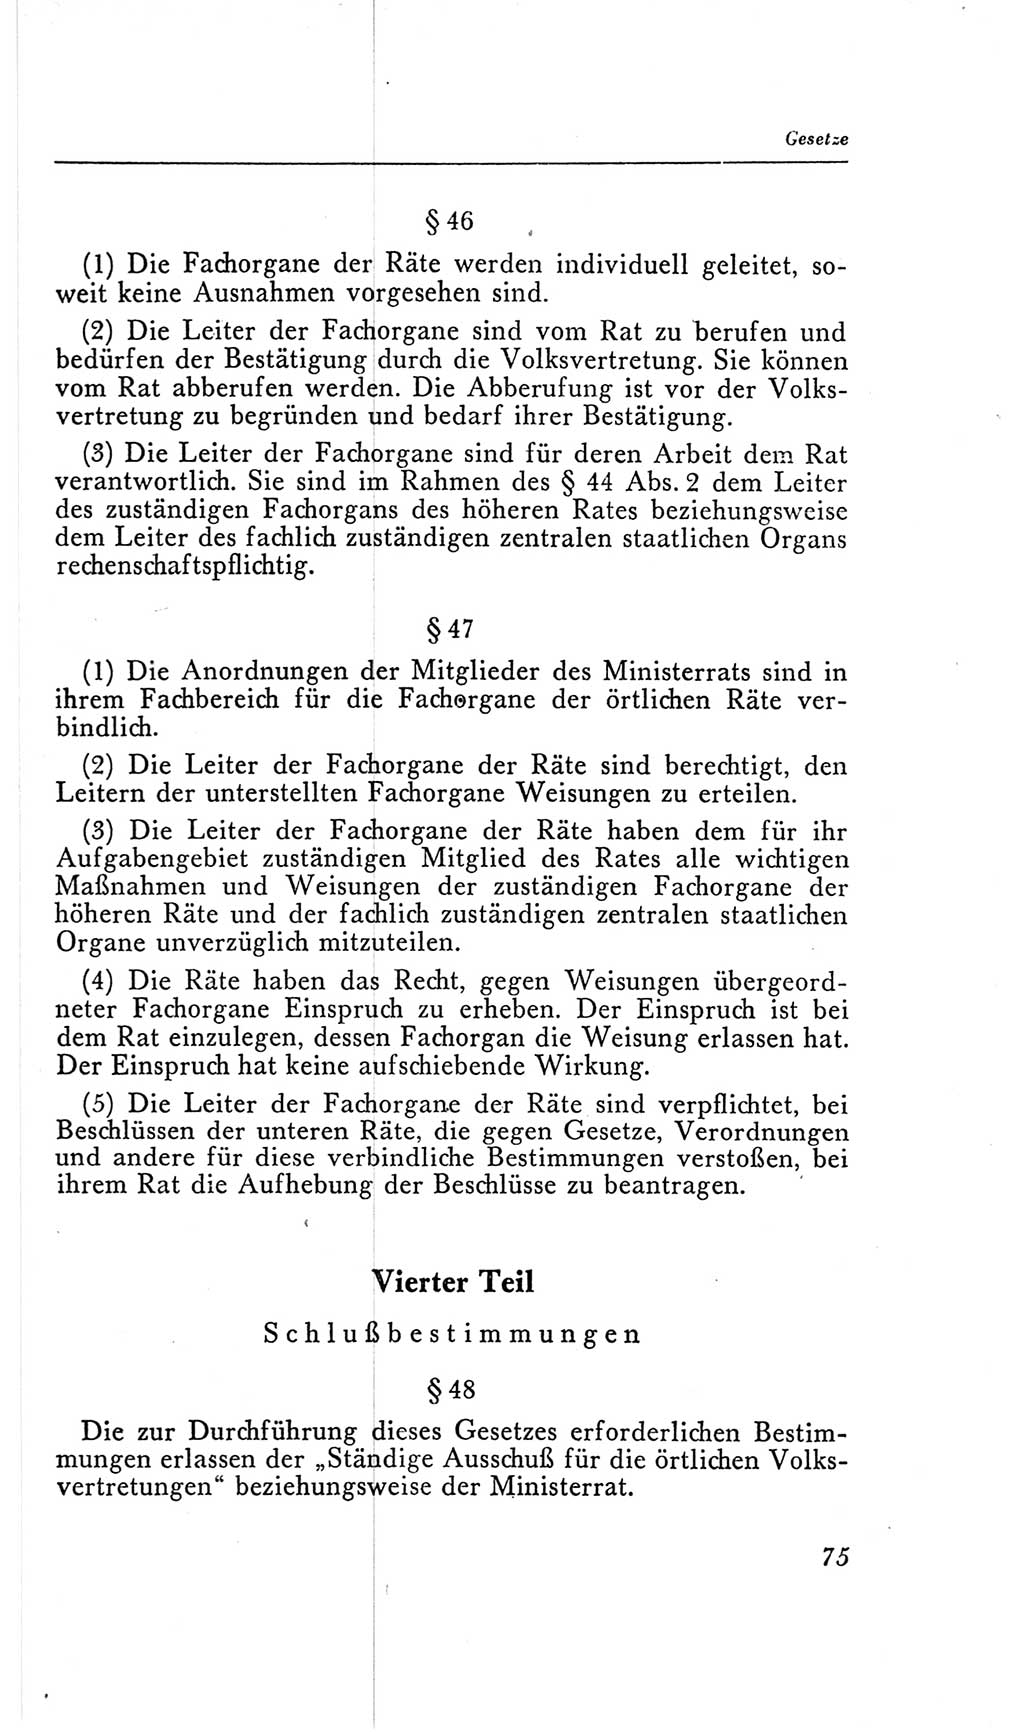 Handbuch der Volkskammer (VK) der Deutschen Demokratischen Republik (DDR), 2. Wahlperiode 1954-1958, Seite 75 (Hdb. VK. DDR, 2. WP. 1954-1958, S. 75)